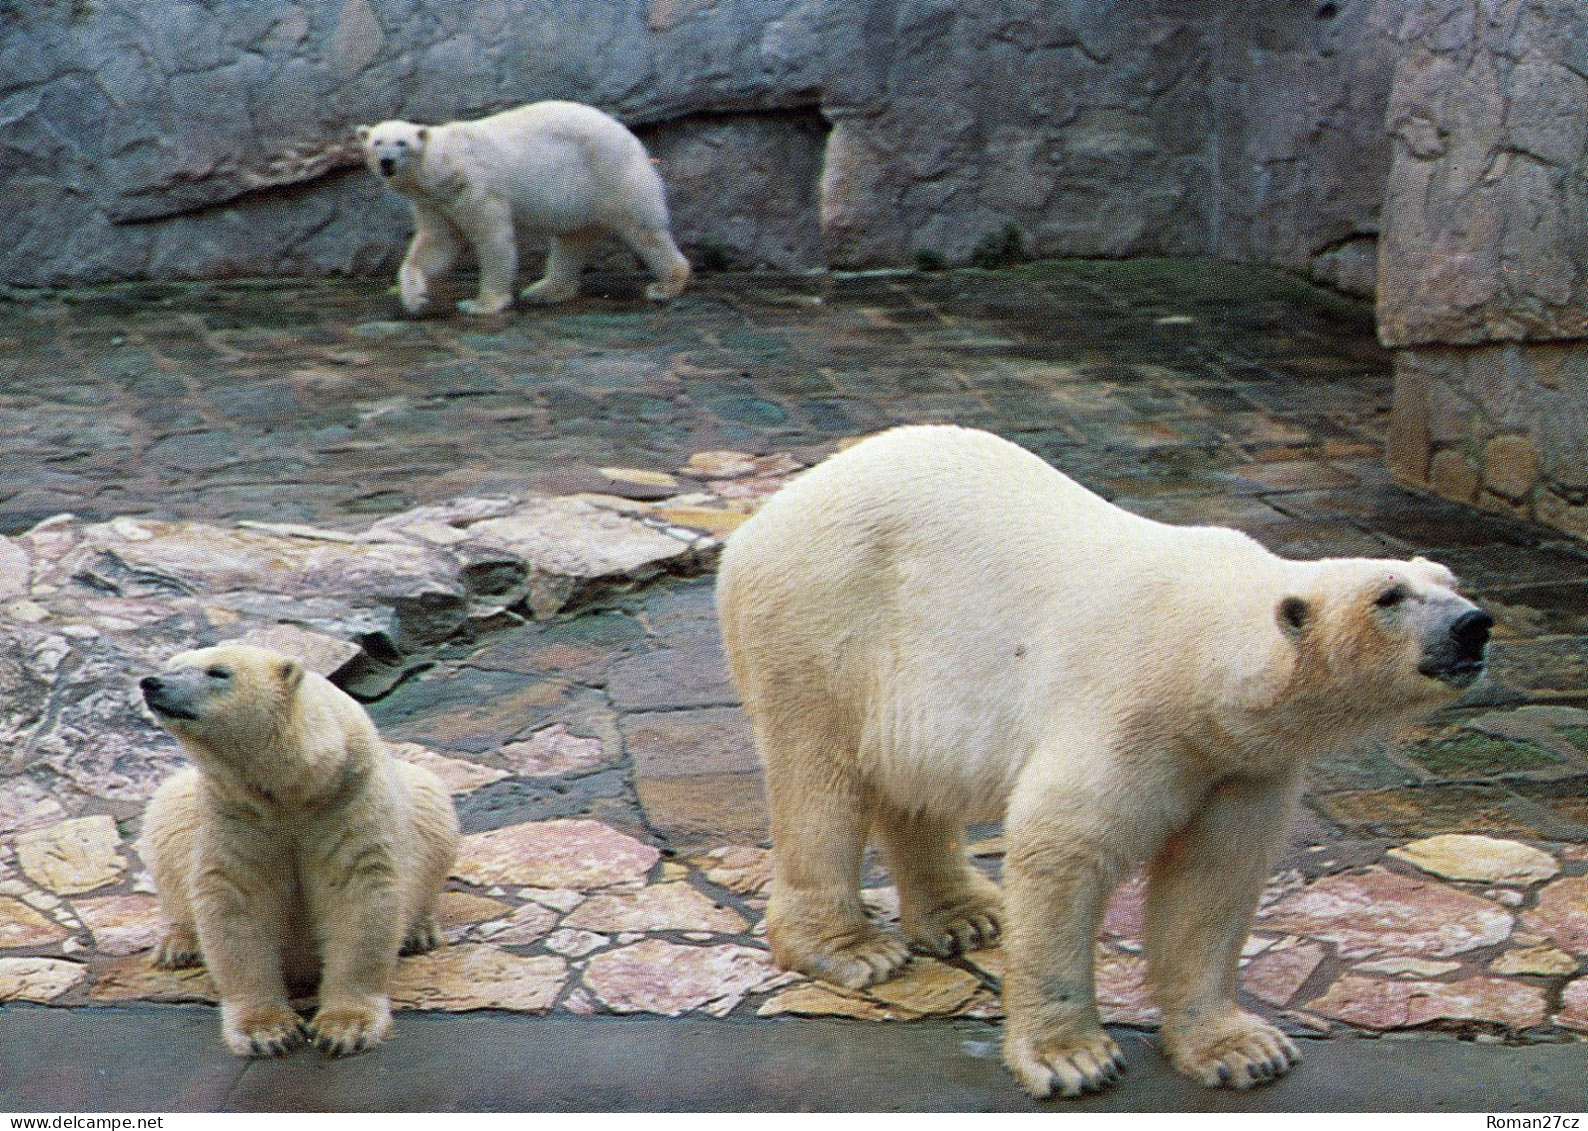 ZOO Wroclaw, Poland - Polar Bear - Pologne